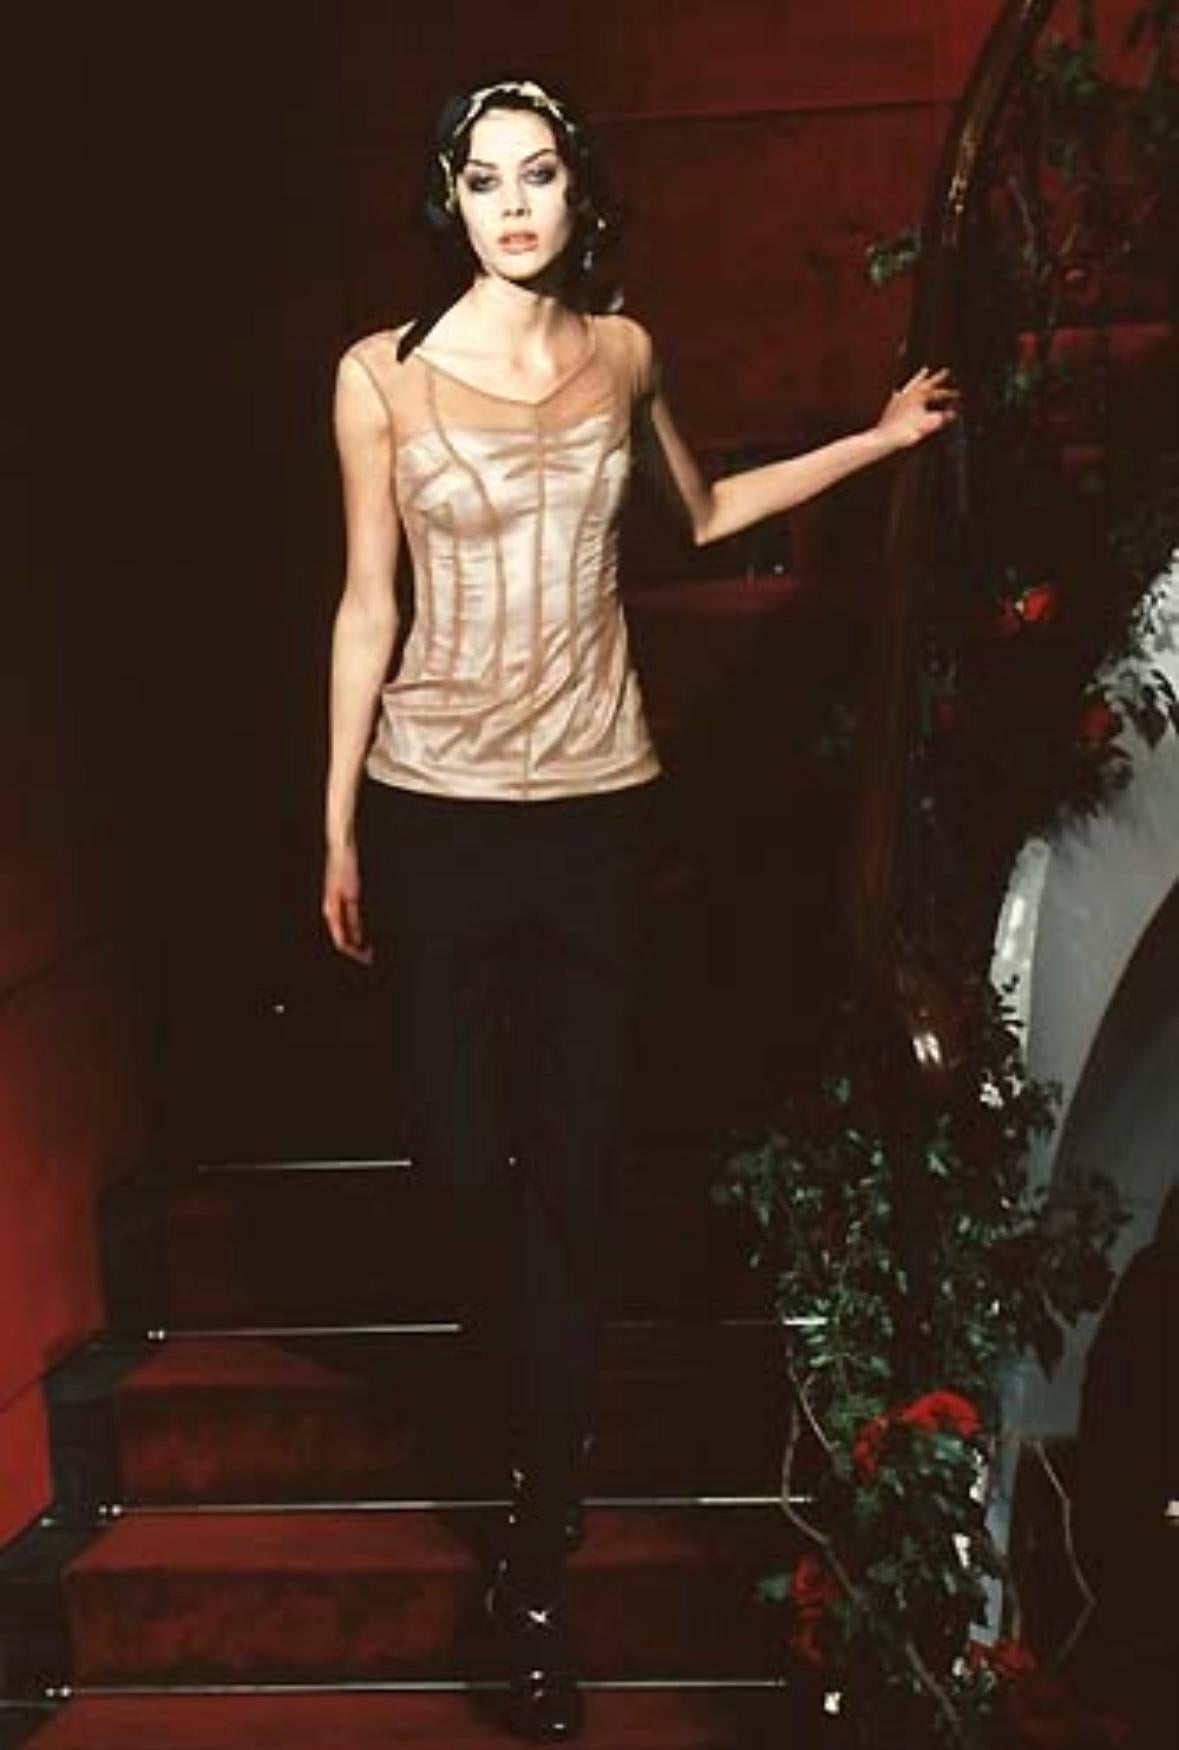 Issue de la collection Printemps/Été 1998, cette robe se compose d'une base en satin argenté et d'un extérieur en maille transparente taupe. La couche intérieure argentée du bustier est visible à travers la maille, ce qui donne à cette robe une